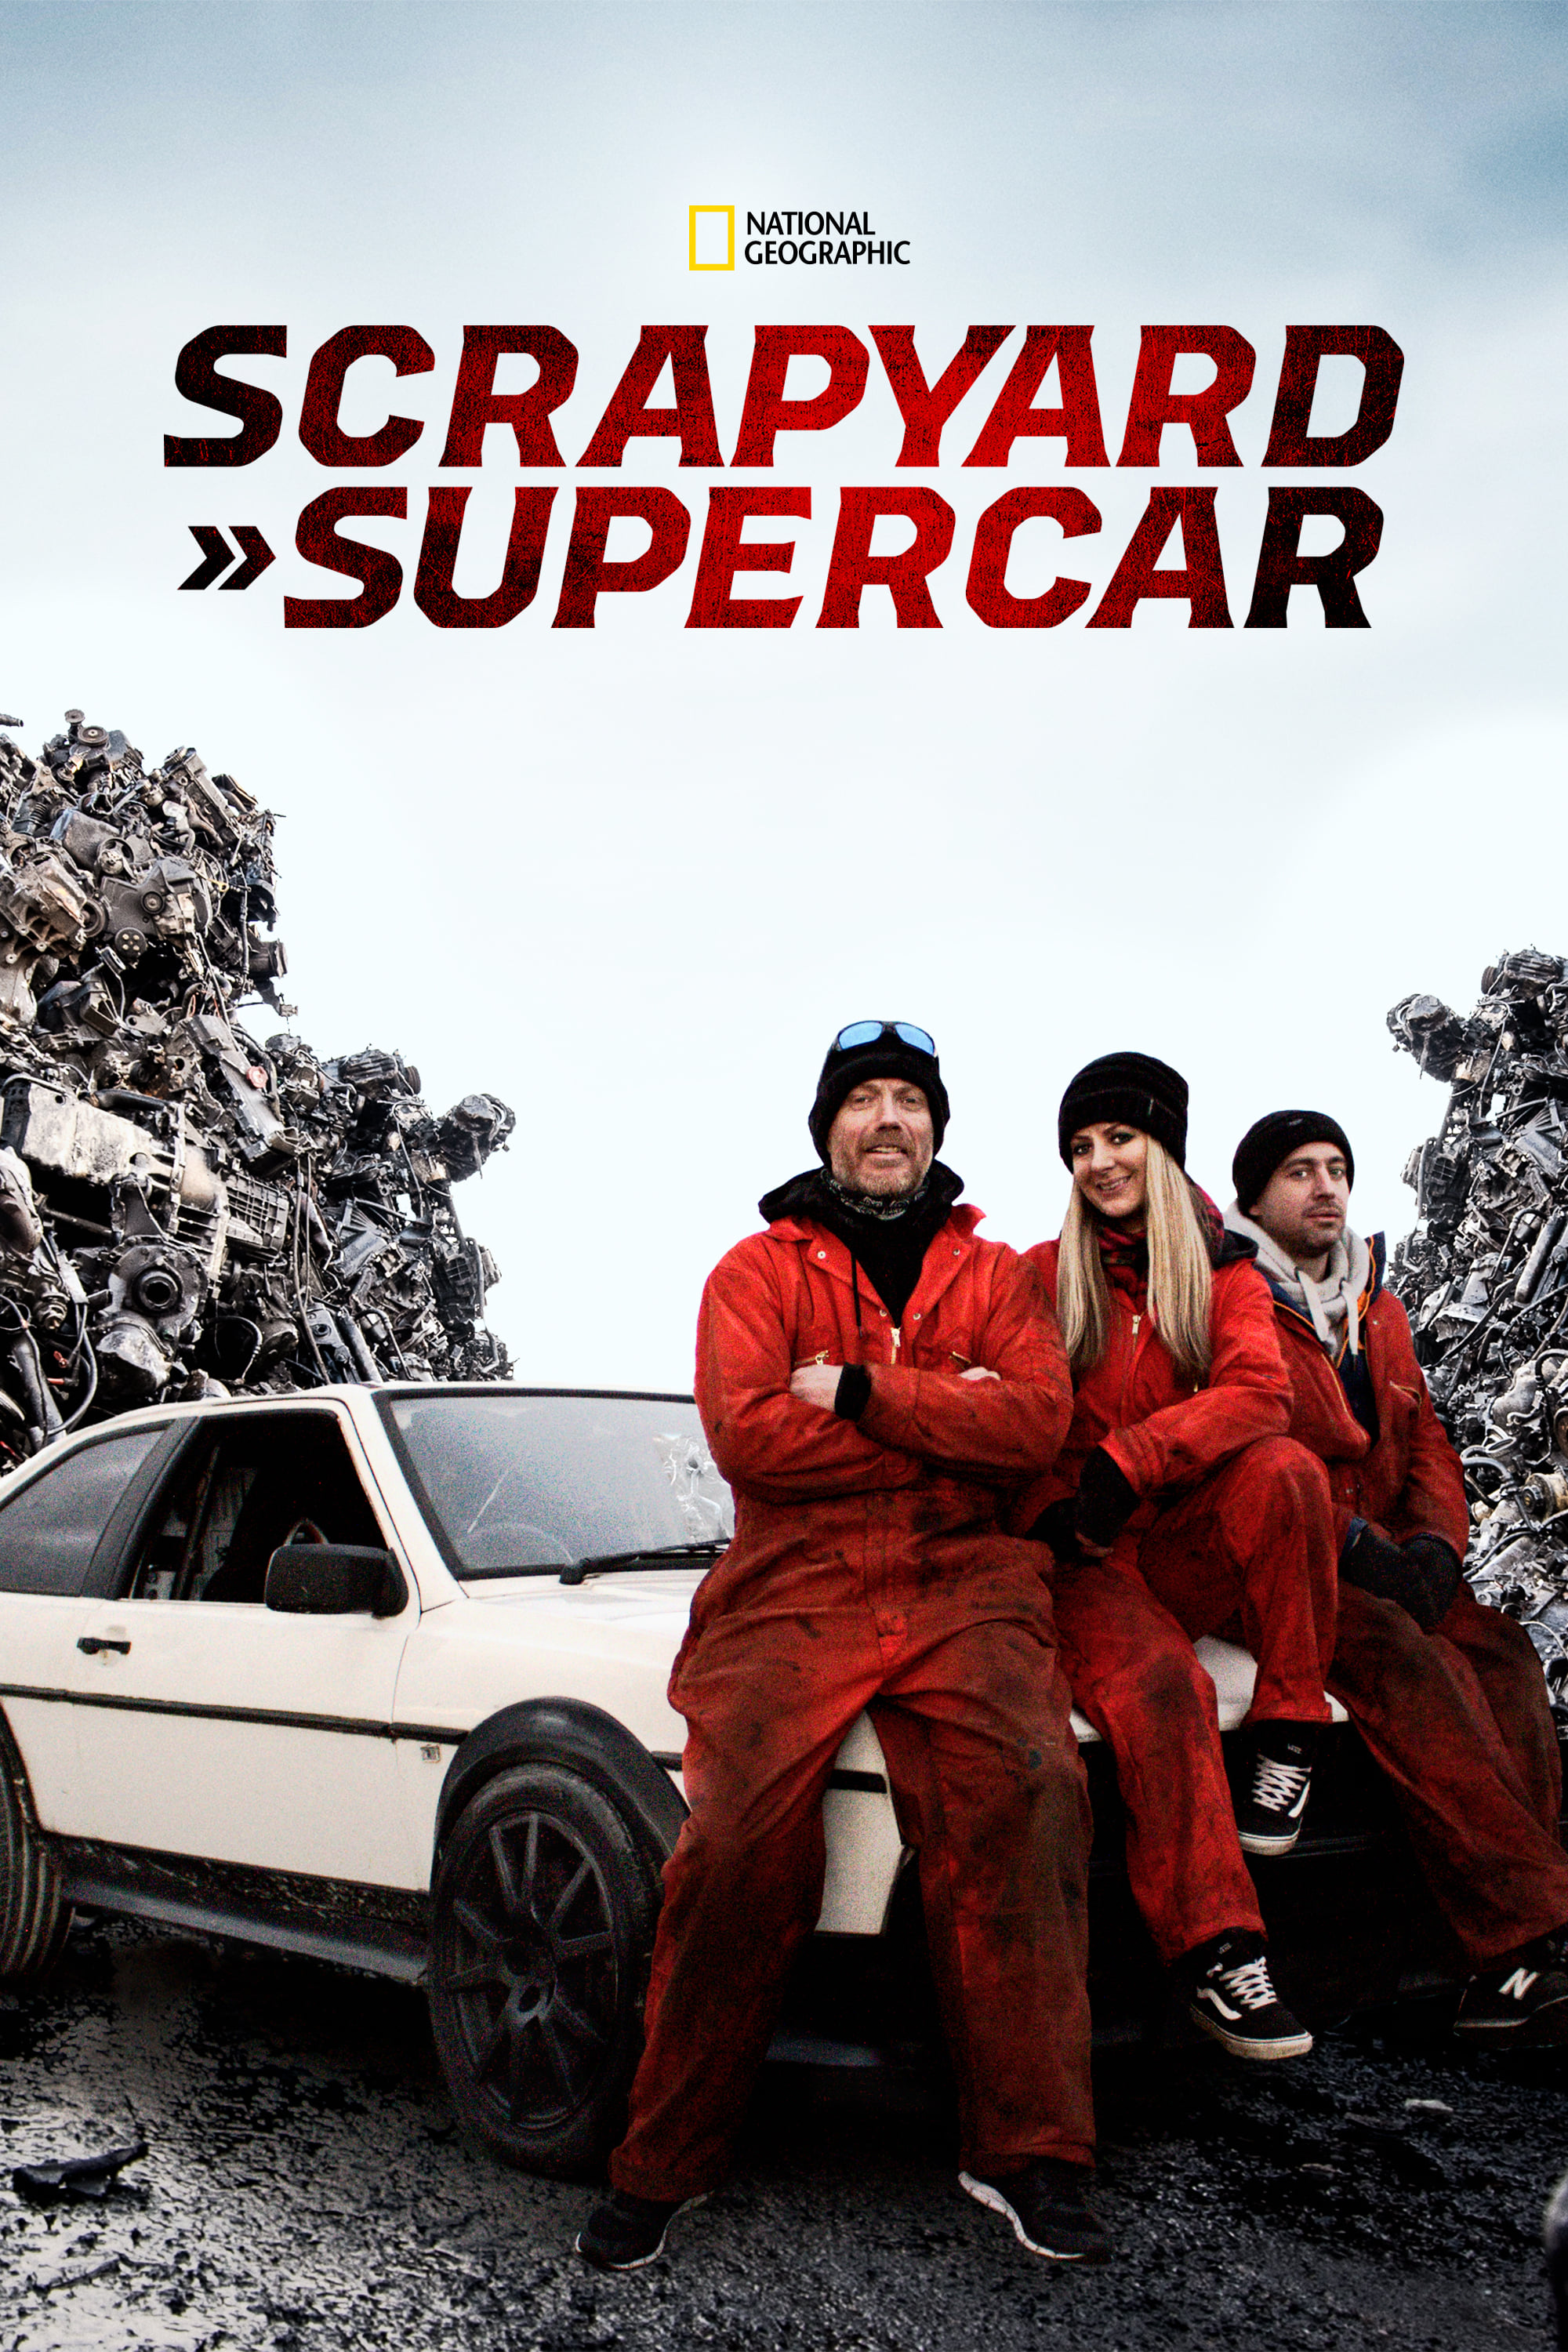 Scrapyard Supercar TV Shows About Supercar